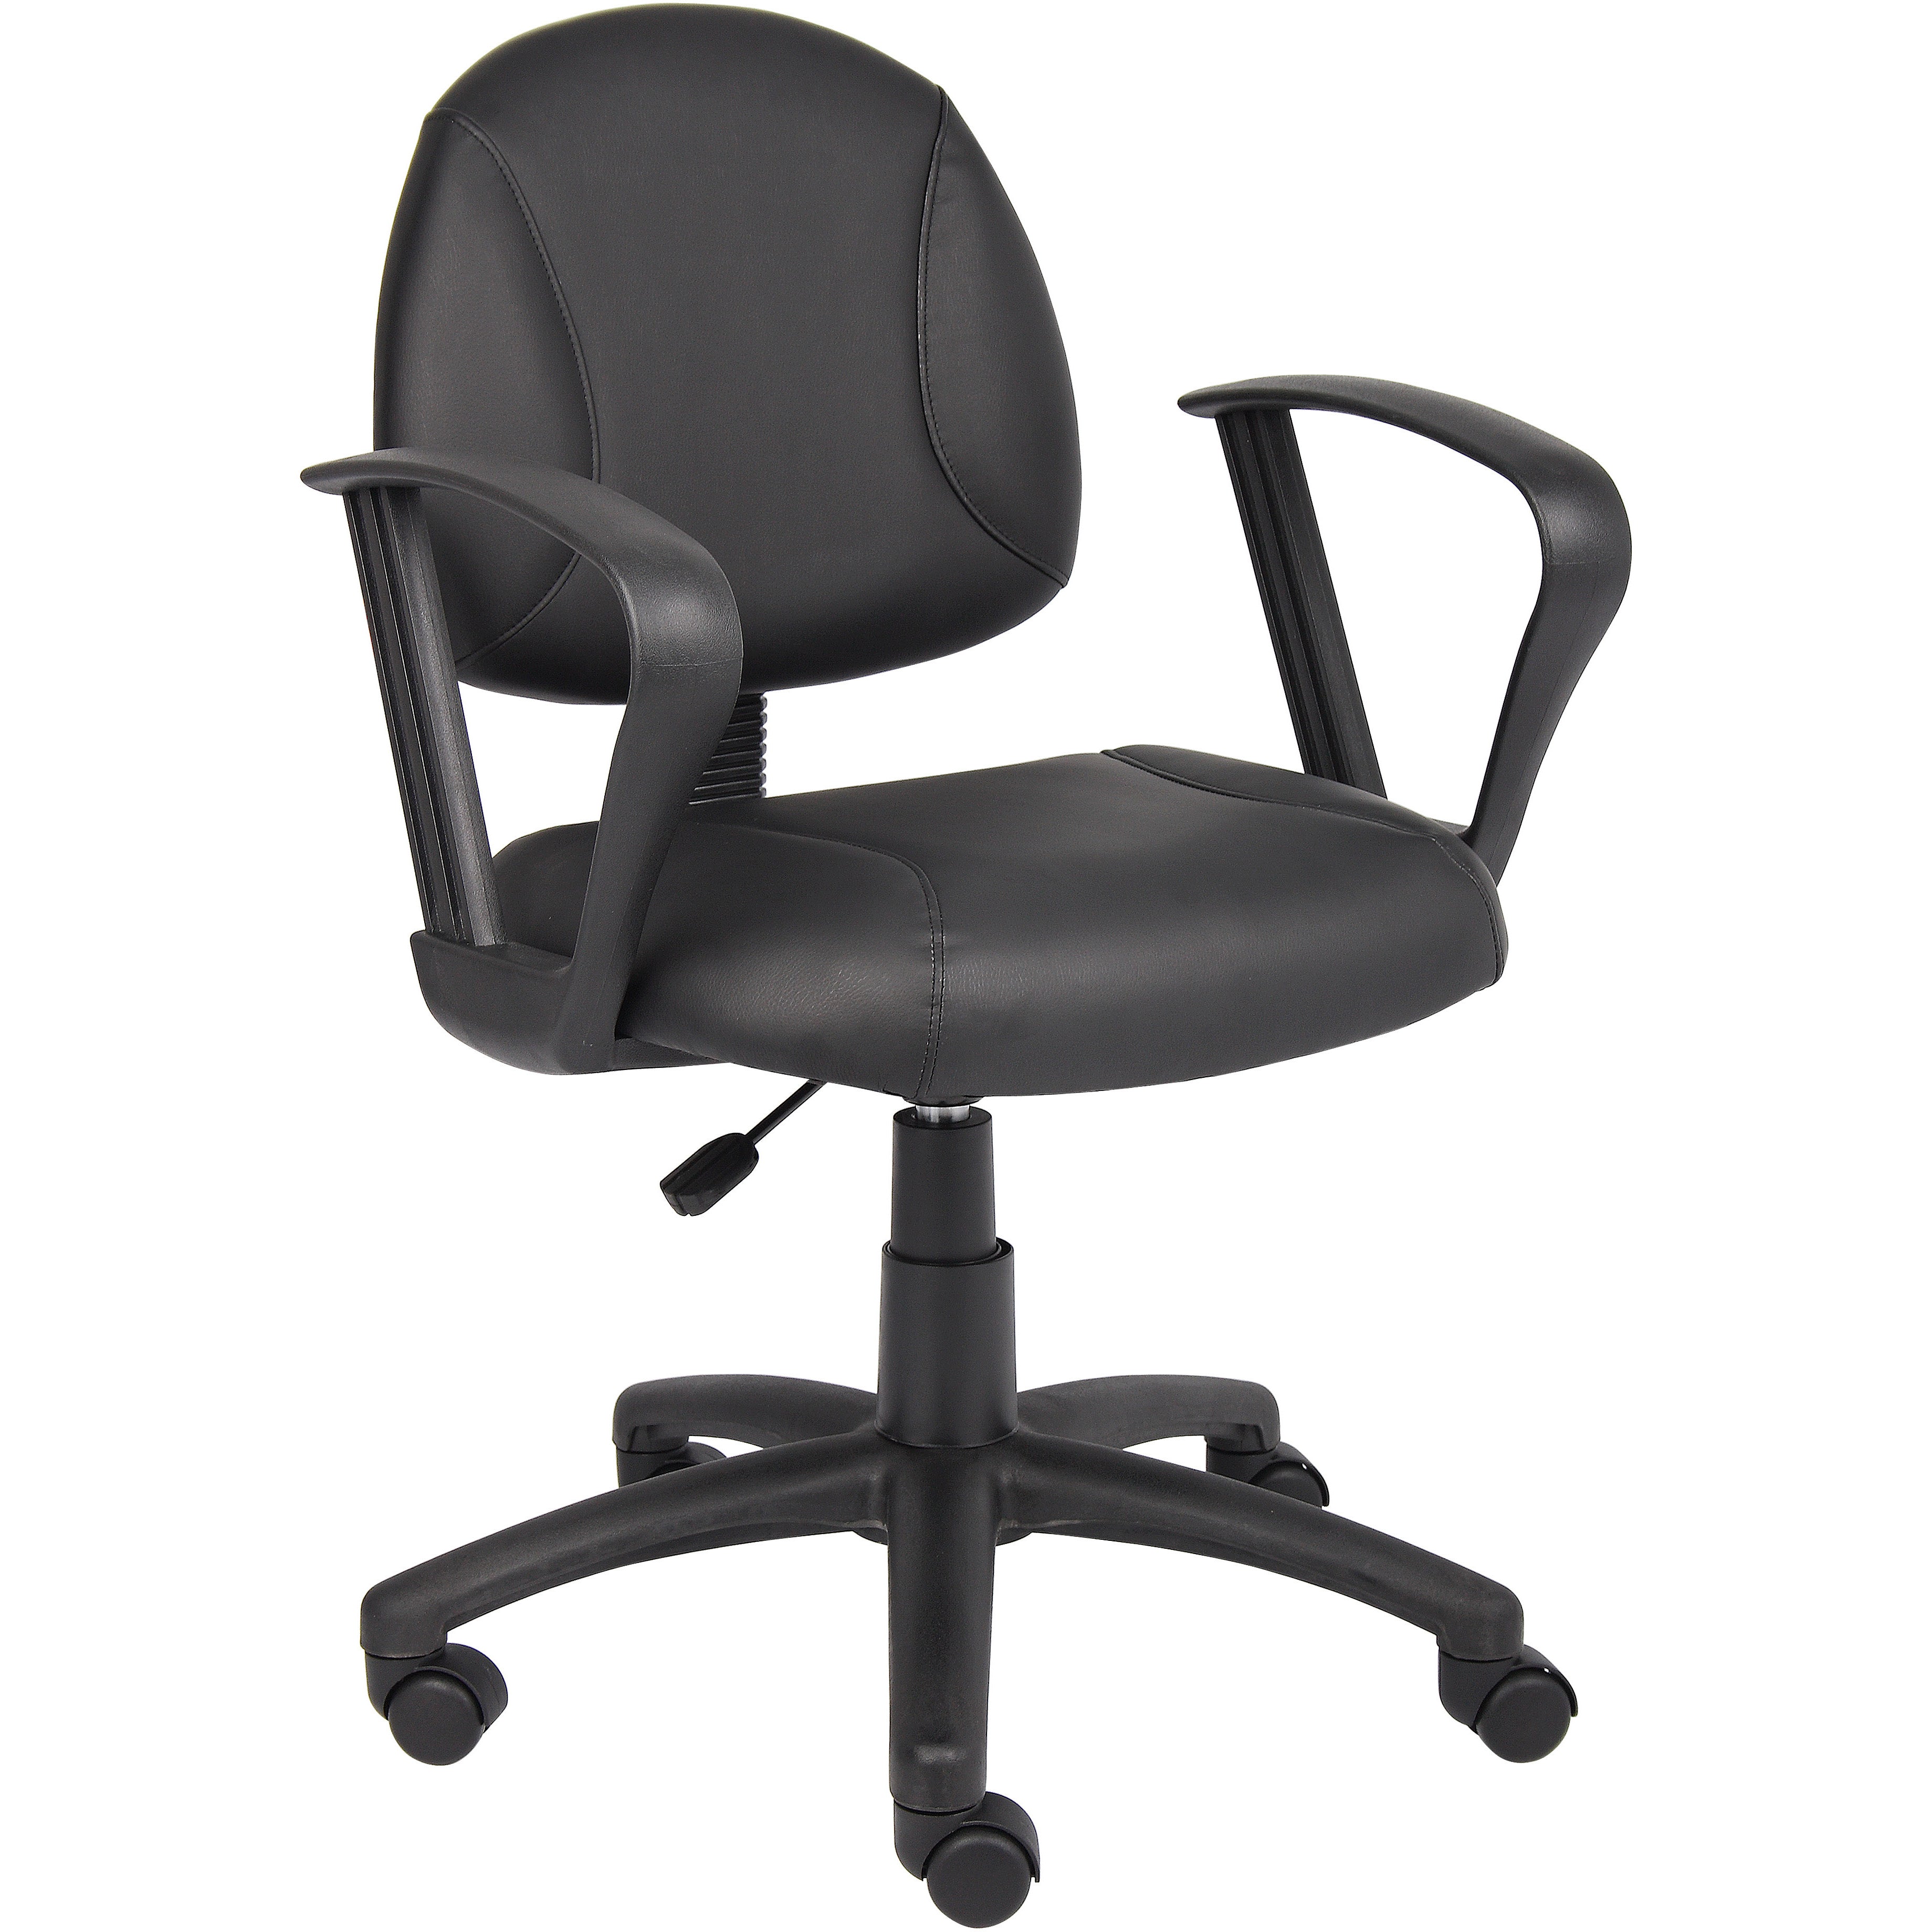 Black Posture Chair with Loop Arms, B307